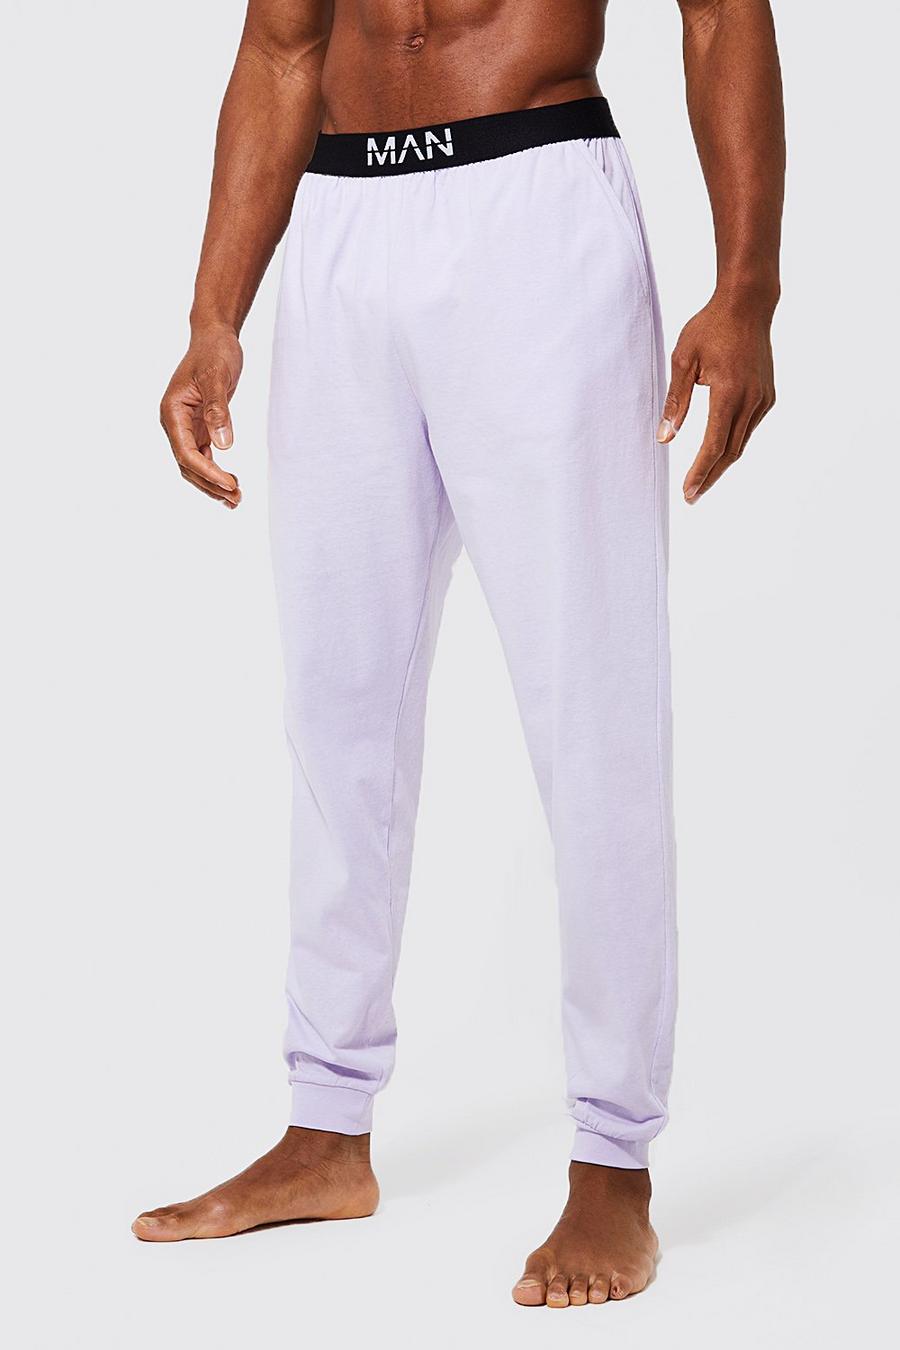 Lilac purple Core Man Dash Loungewear Pants